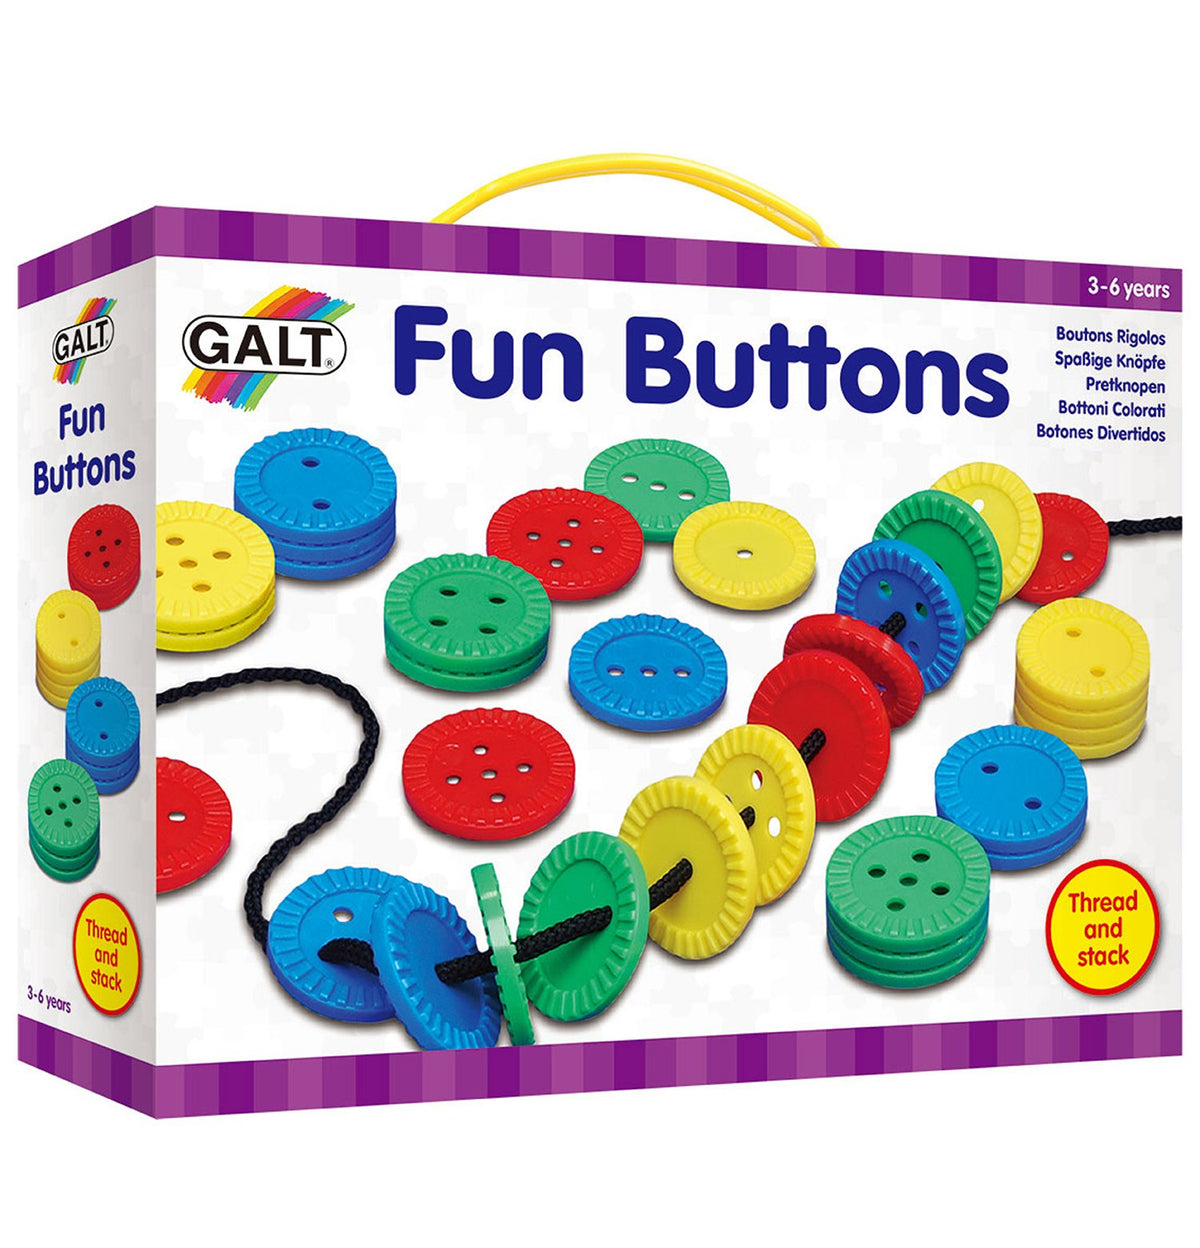 Fun Buttons - Galt